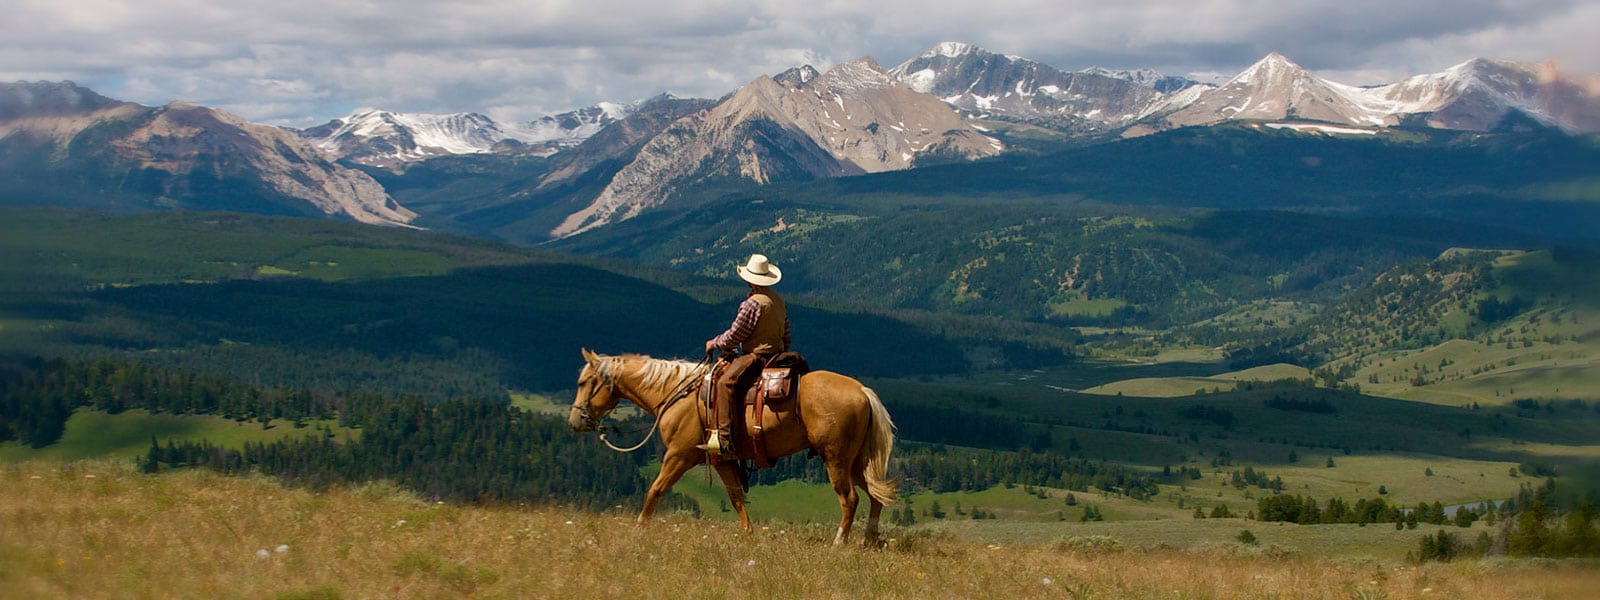 Rider looking at mountain vista